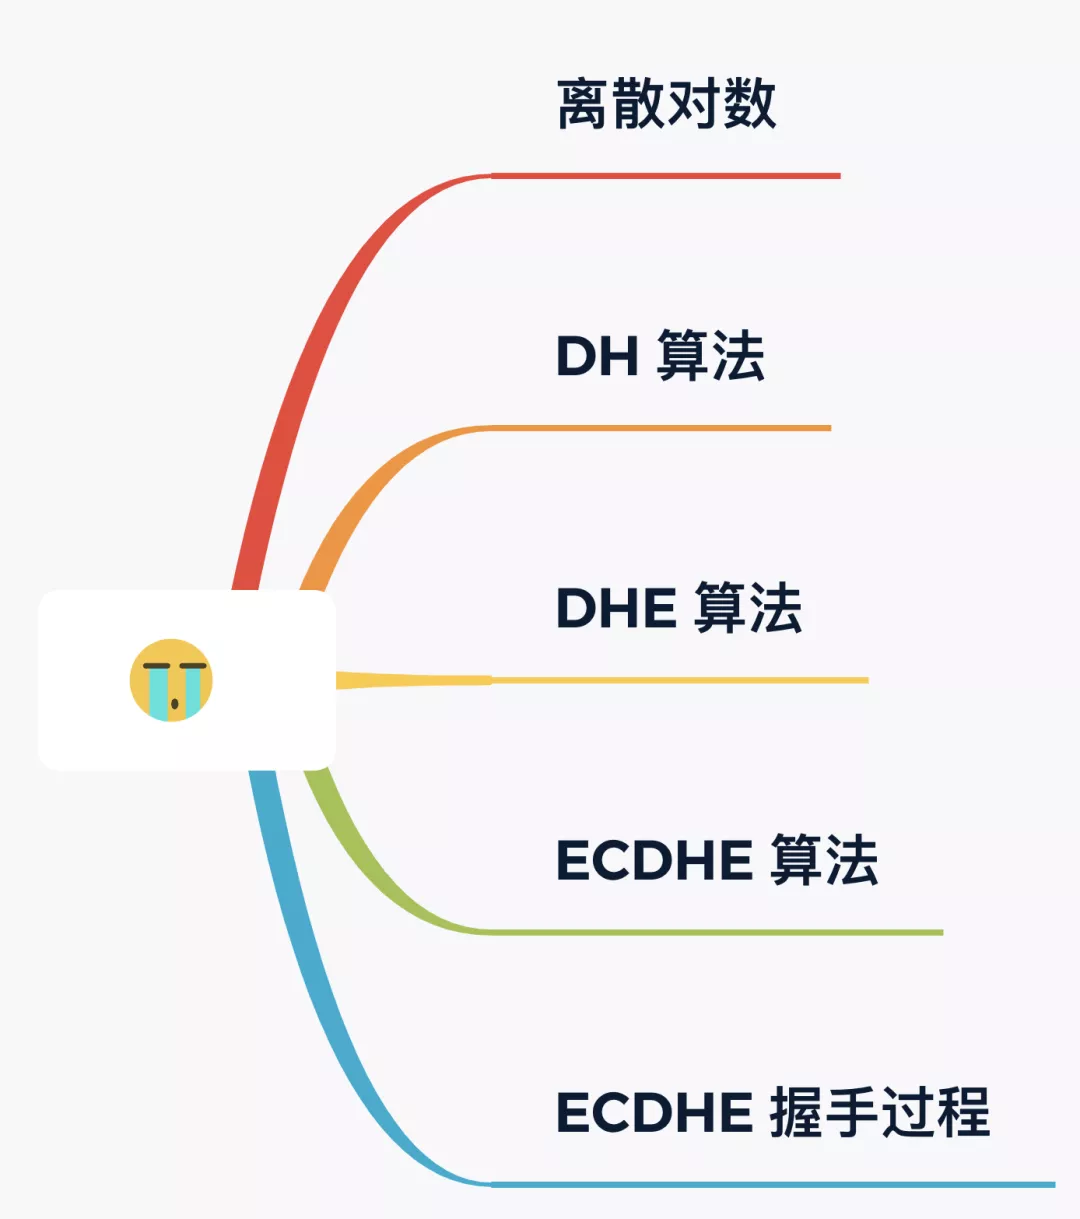 HTTPS密钥交换算法之ECDHE 算法 - 图1